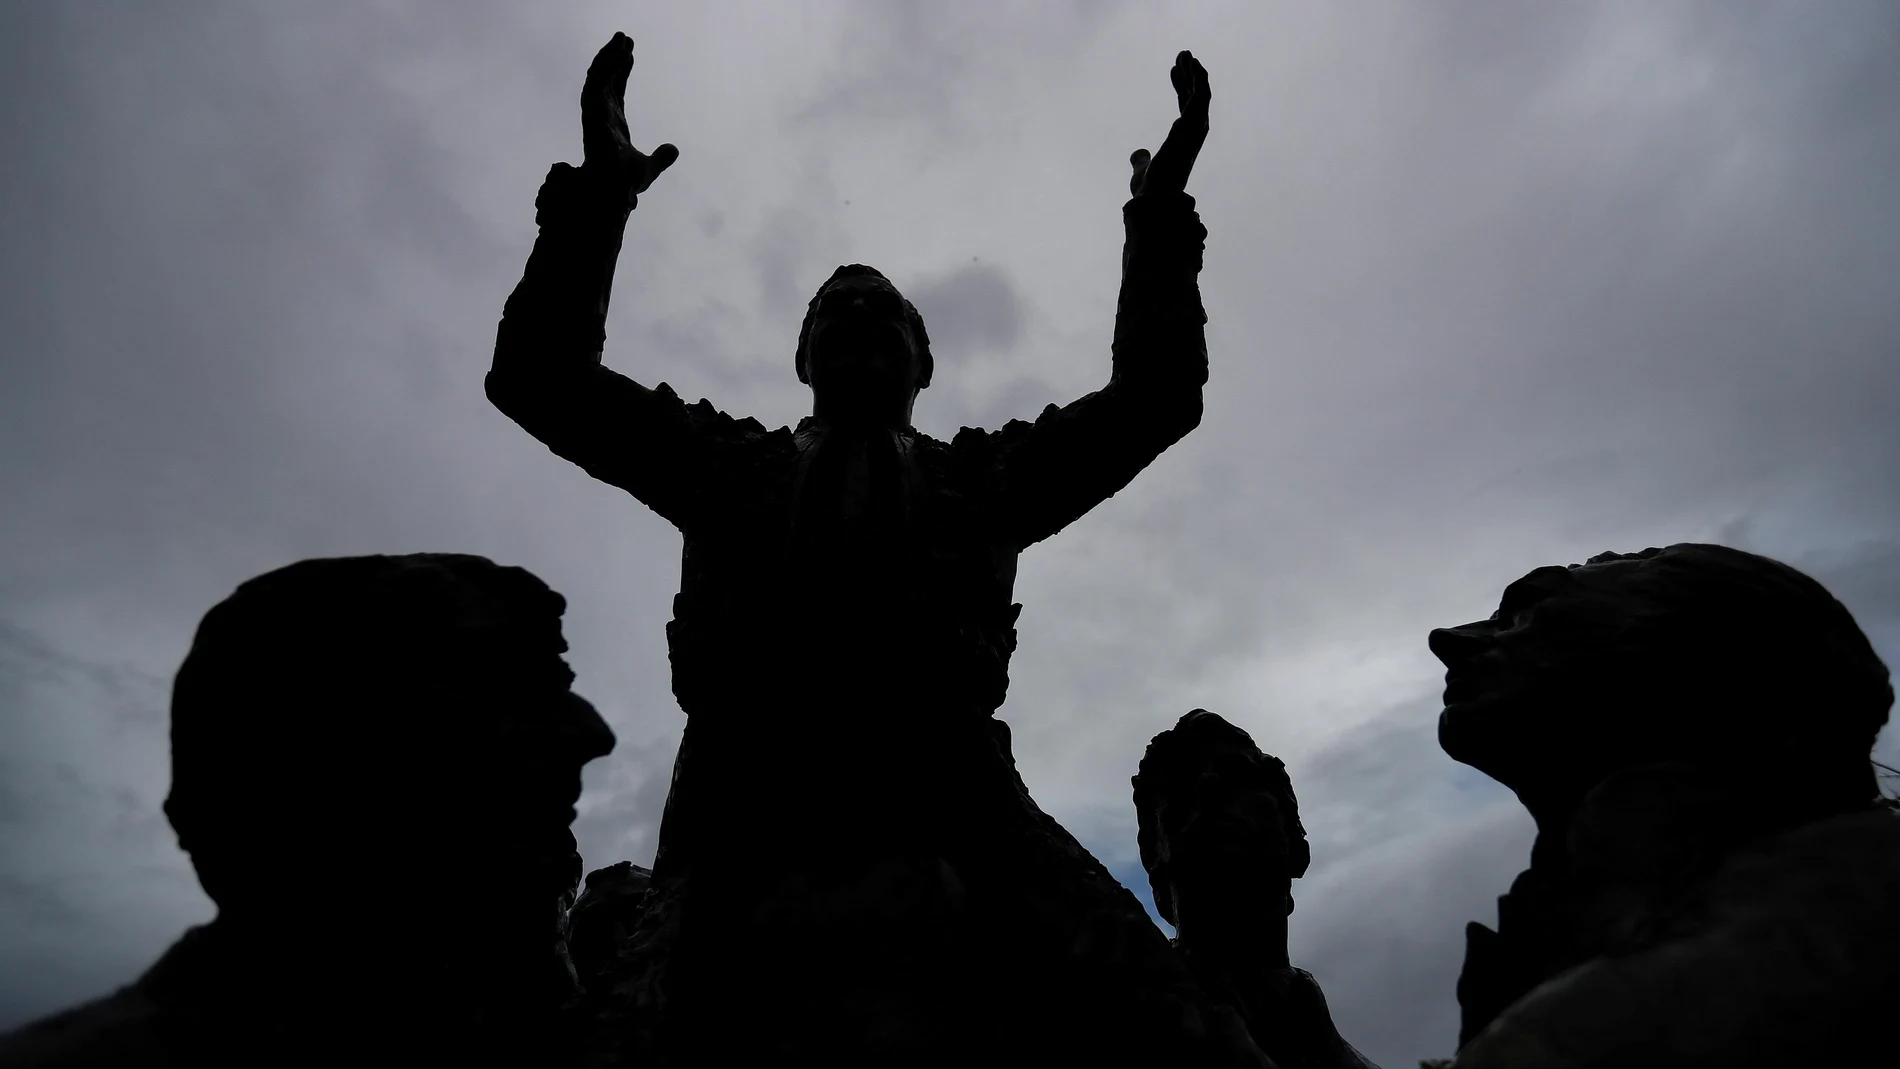 Silueta de la escultura de Antonio Bienvenida que se levanta frente a la Monumental de Las Ventas en Madrid, que este año no ha podido celebrar su Feria de San Isidro